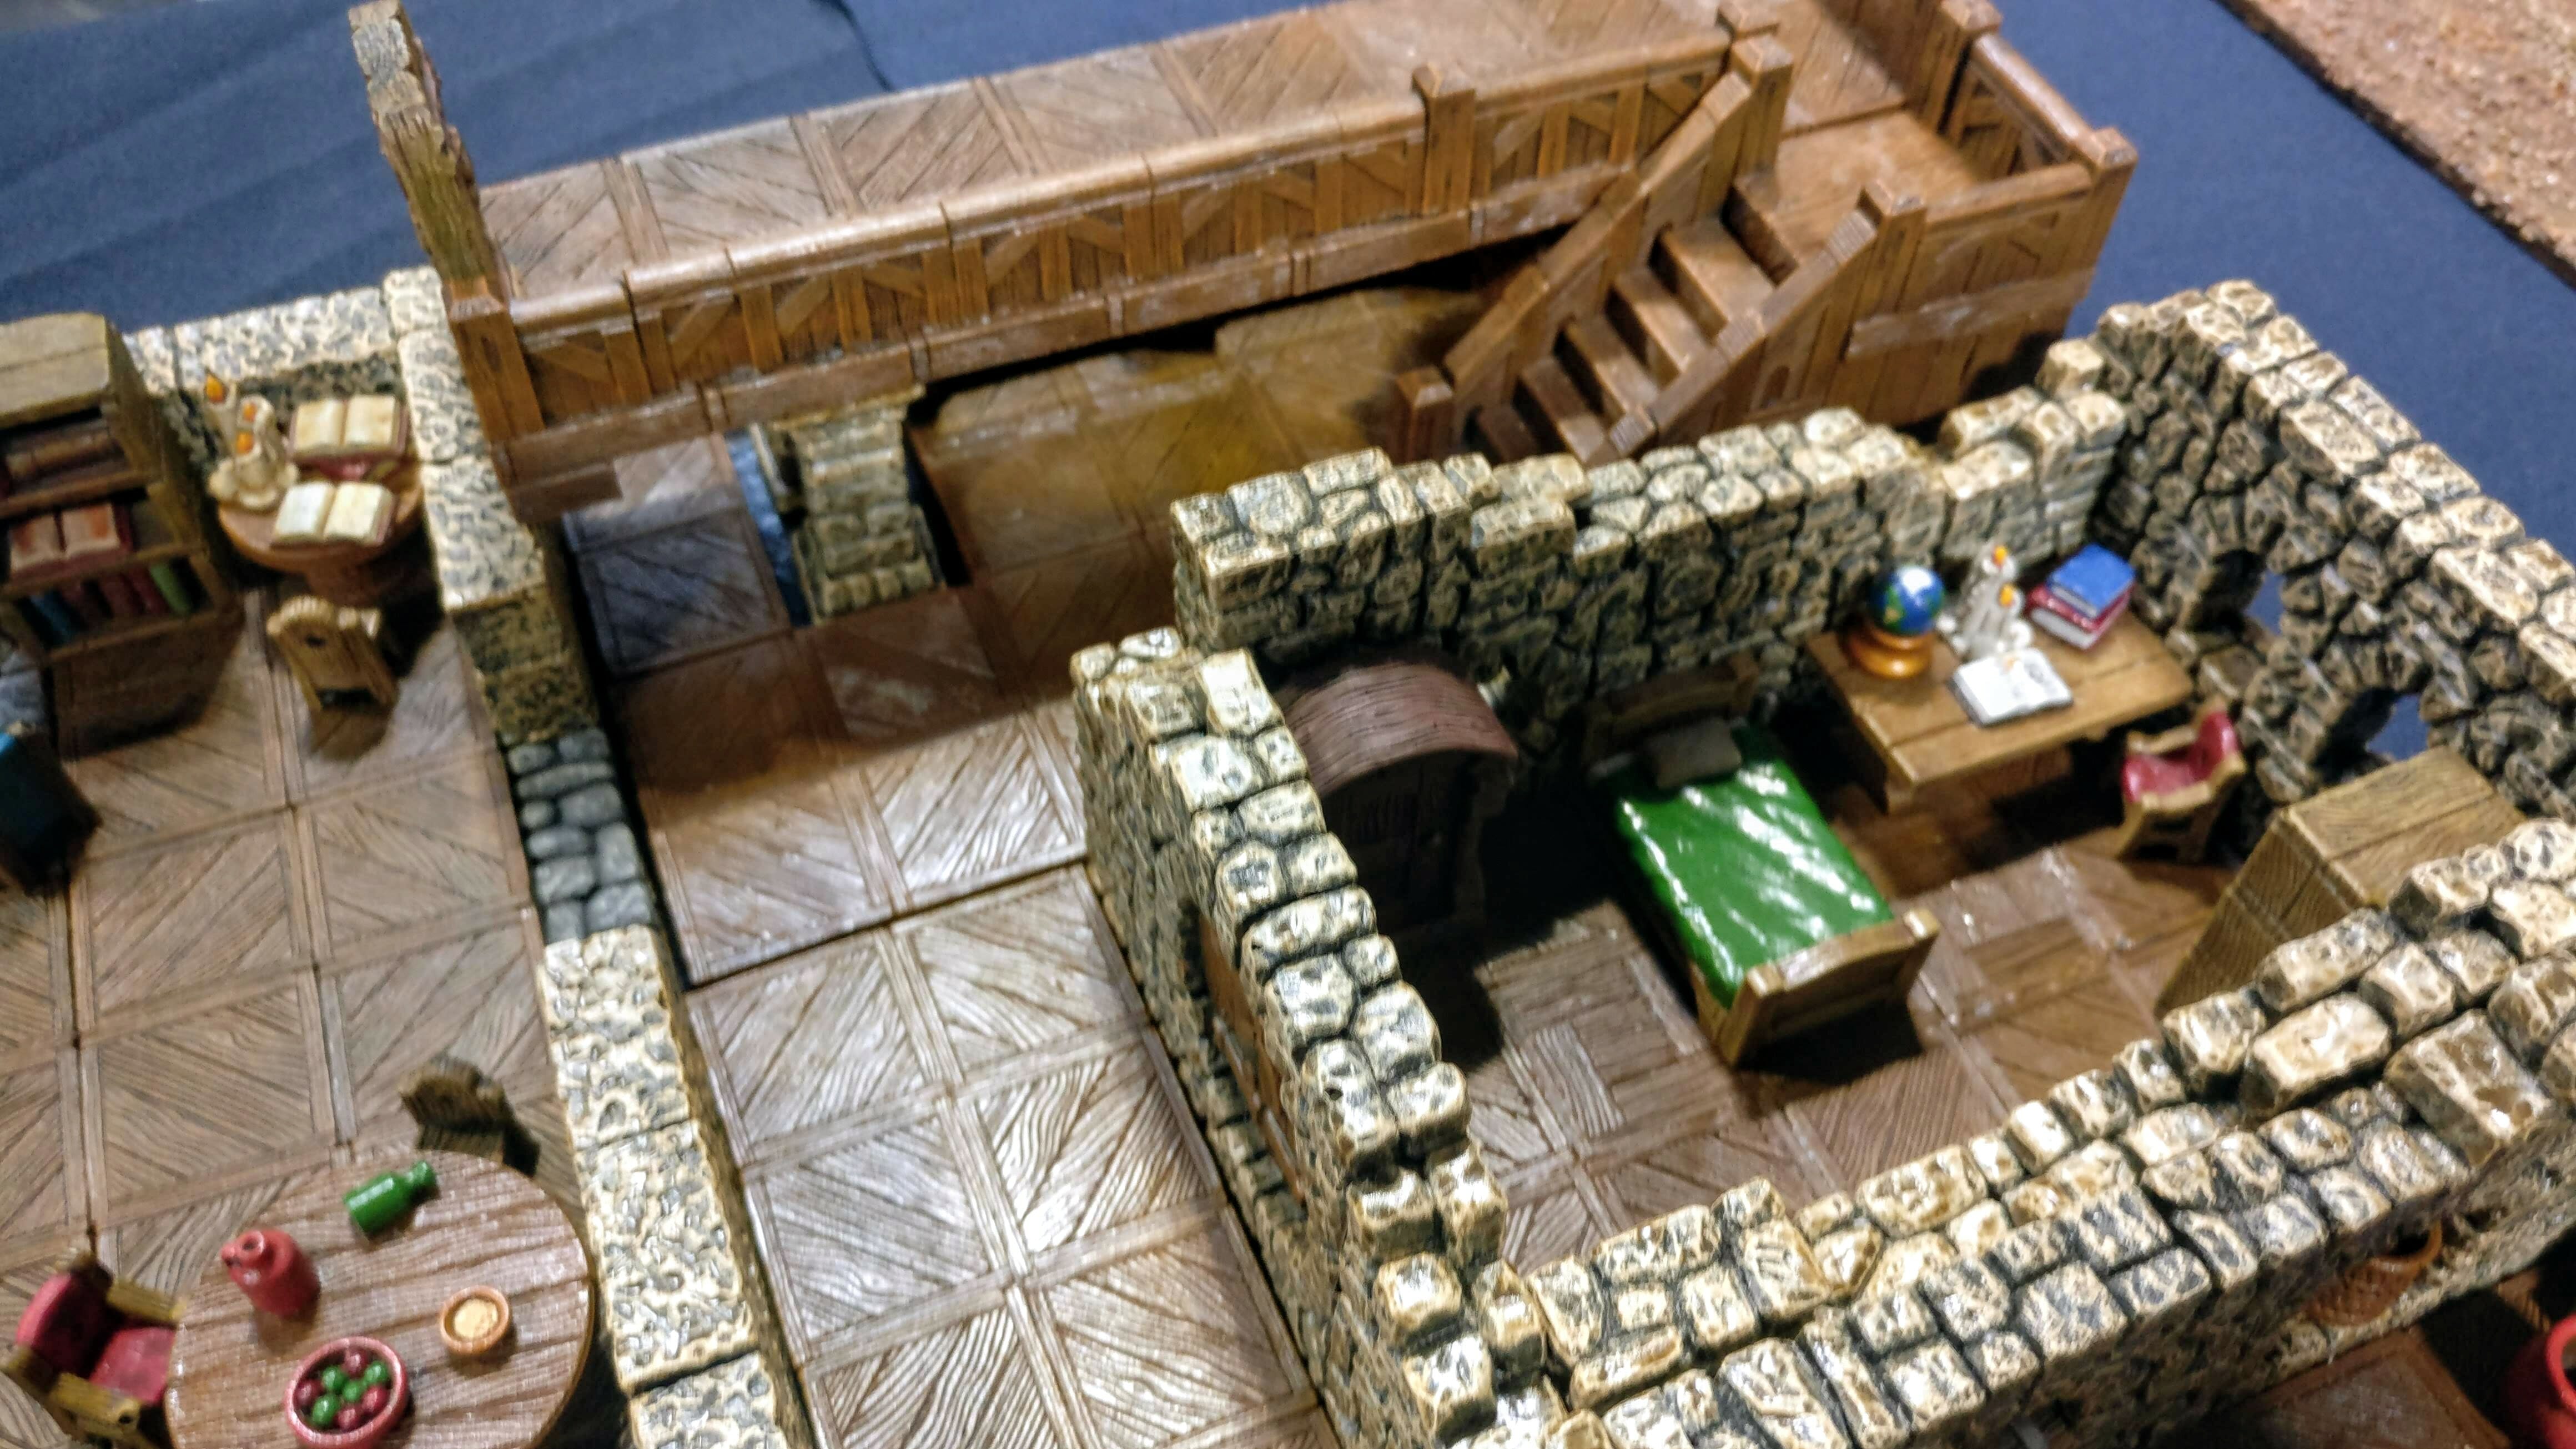 DMB Games' Tavern terrain